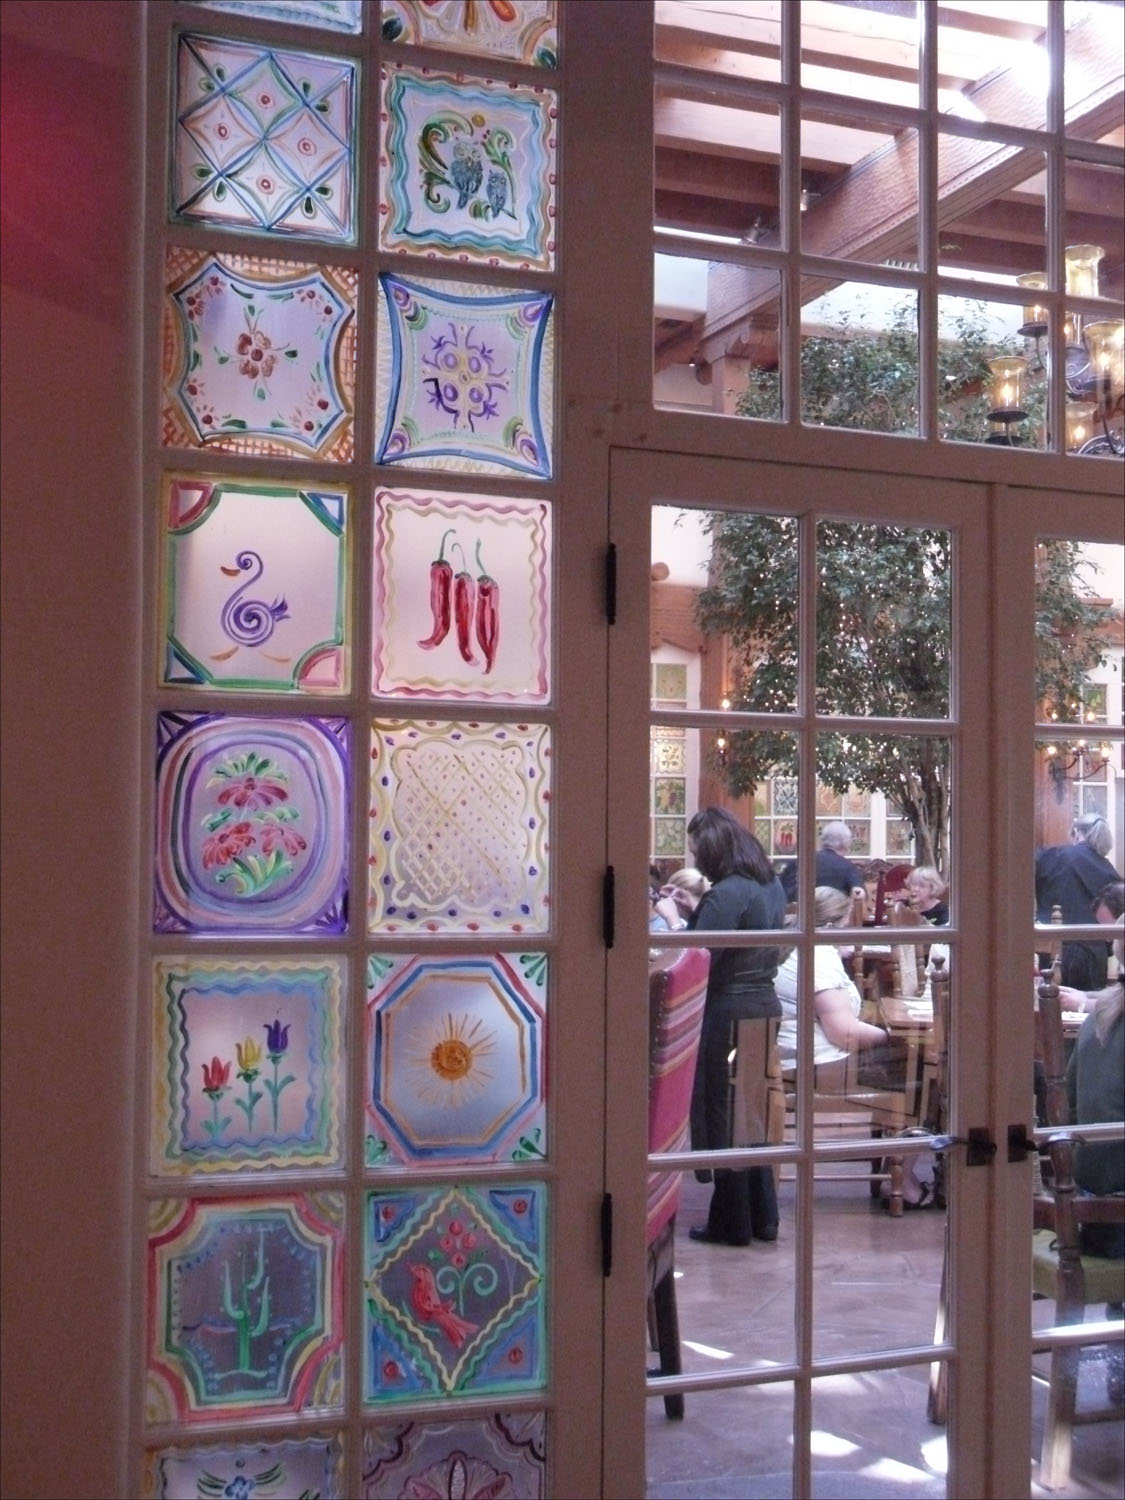 Santa Fe, NM-La Fonda Hotel details-painted window panels around atrium restaurant